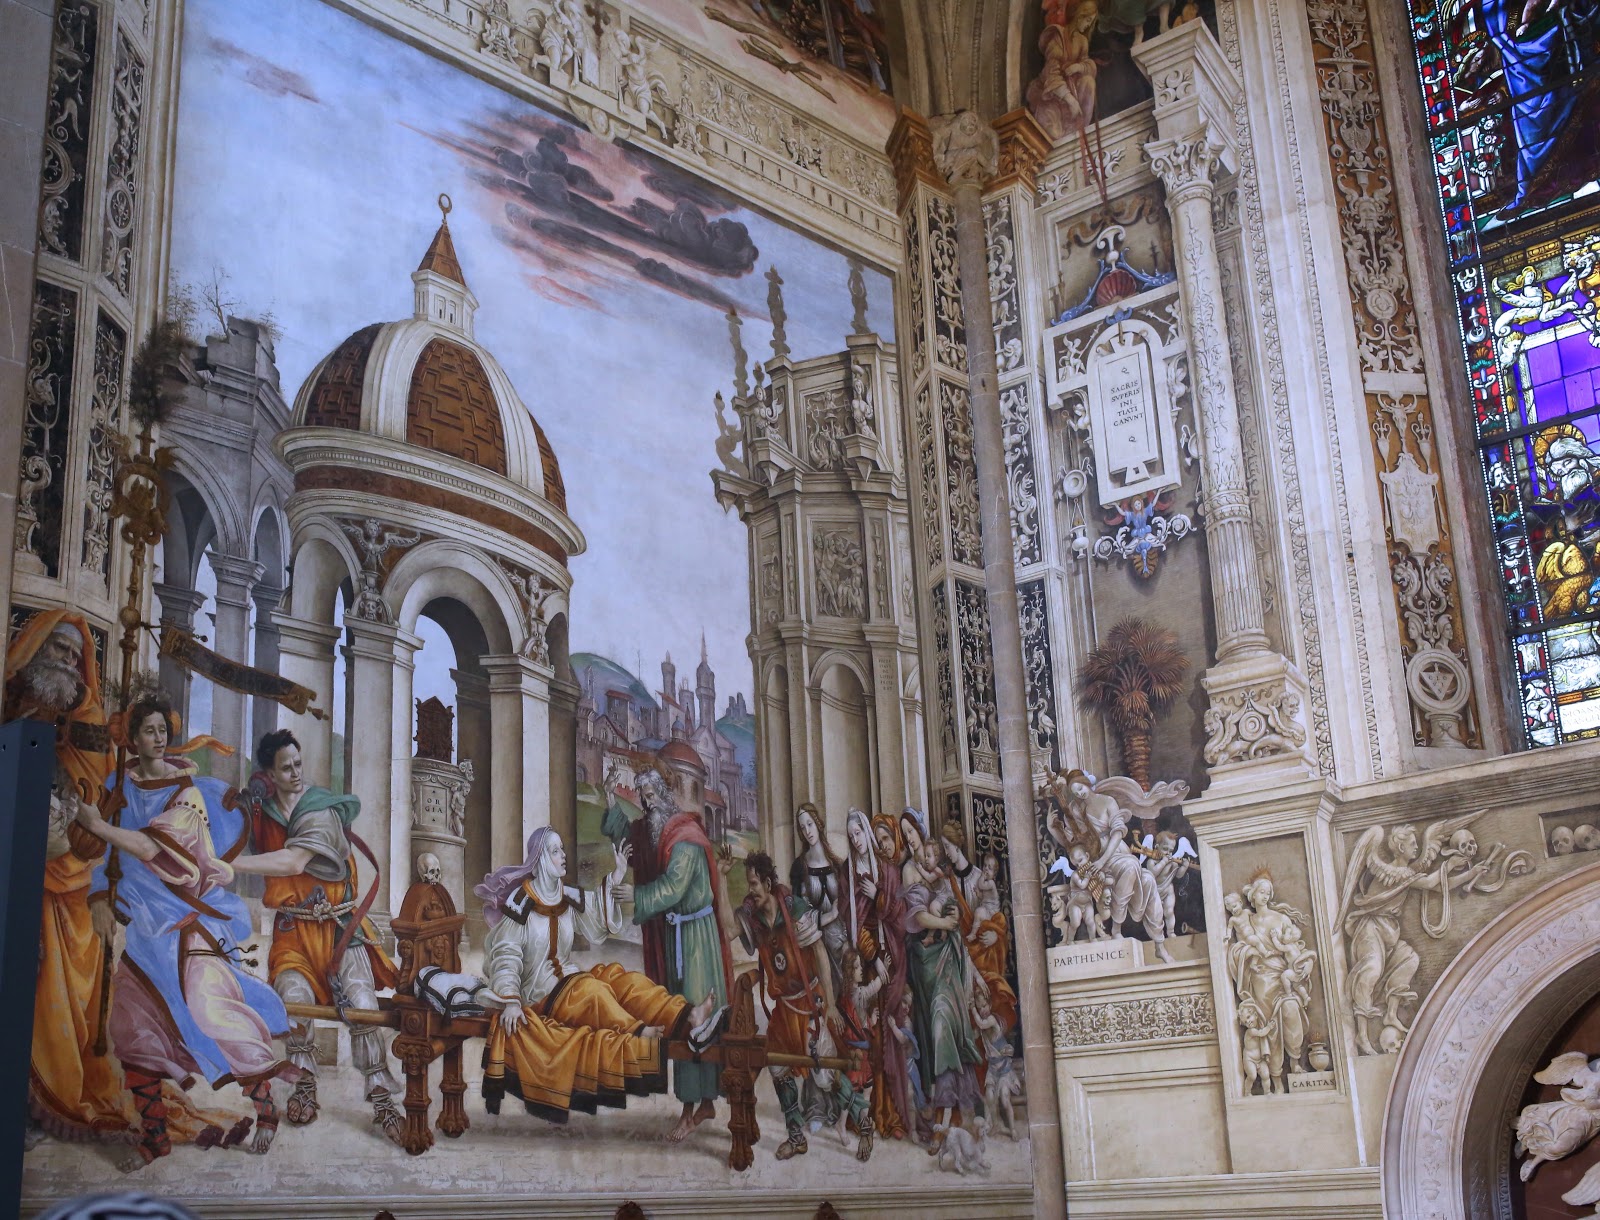 Filippino+Lippi-1457-1504 (36).jpg